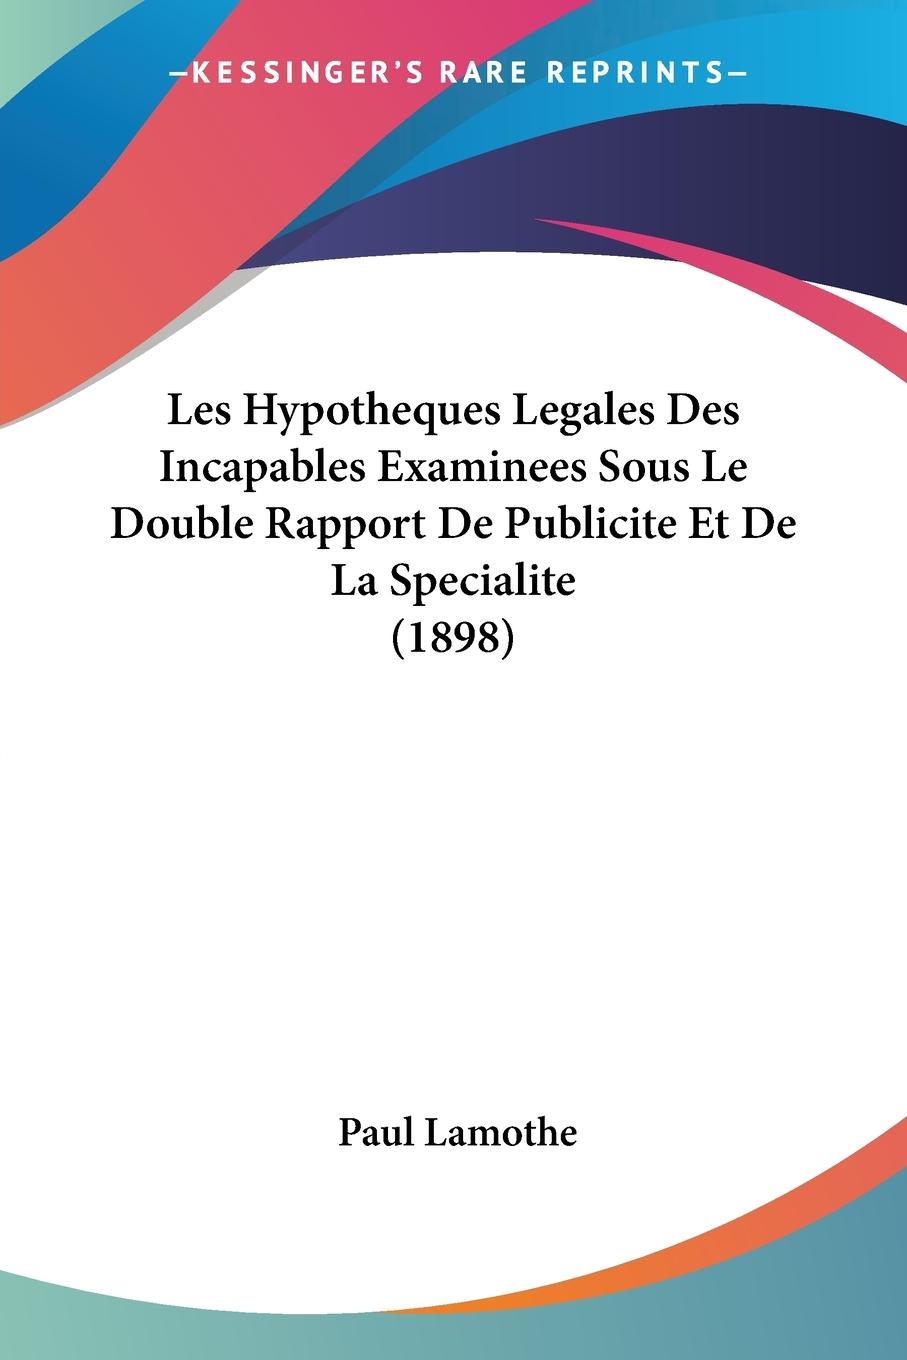 Les Hypotheques Legales Des Incapables Examinees Sous Le Double Rapport De Publicite Et De La Specialite (1898) - Lamothe, Paul